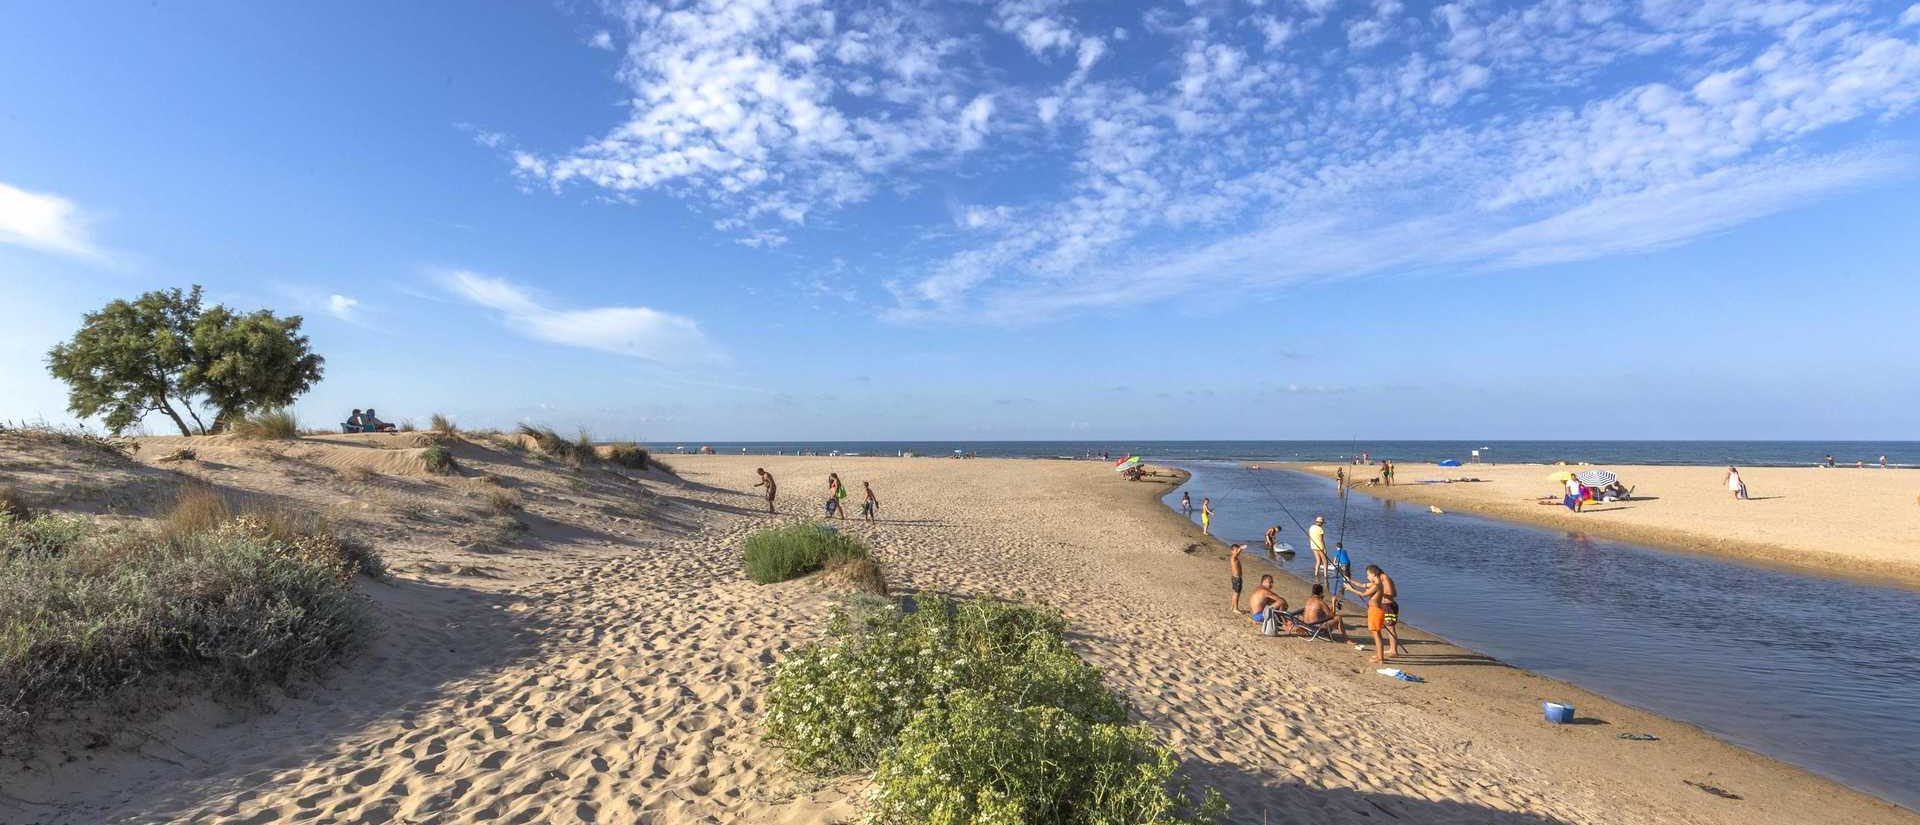 La playa de les Deveses está en obras para revertir la erosión de su litoral